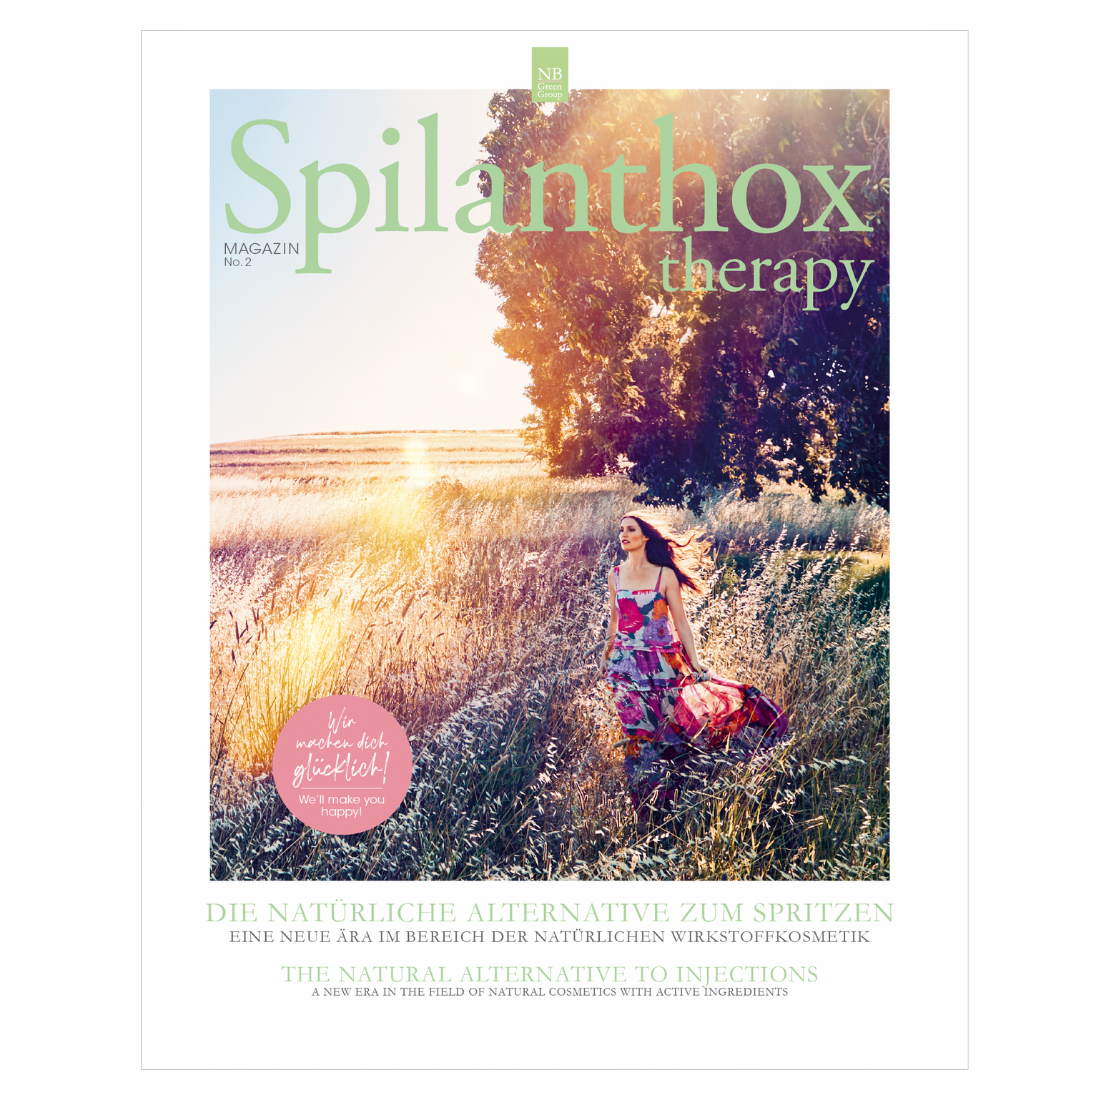 Spilanthox therapy Magazin - EN